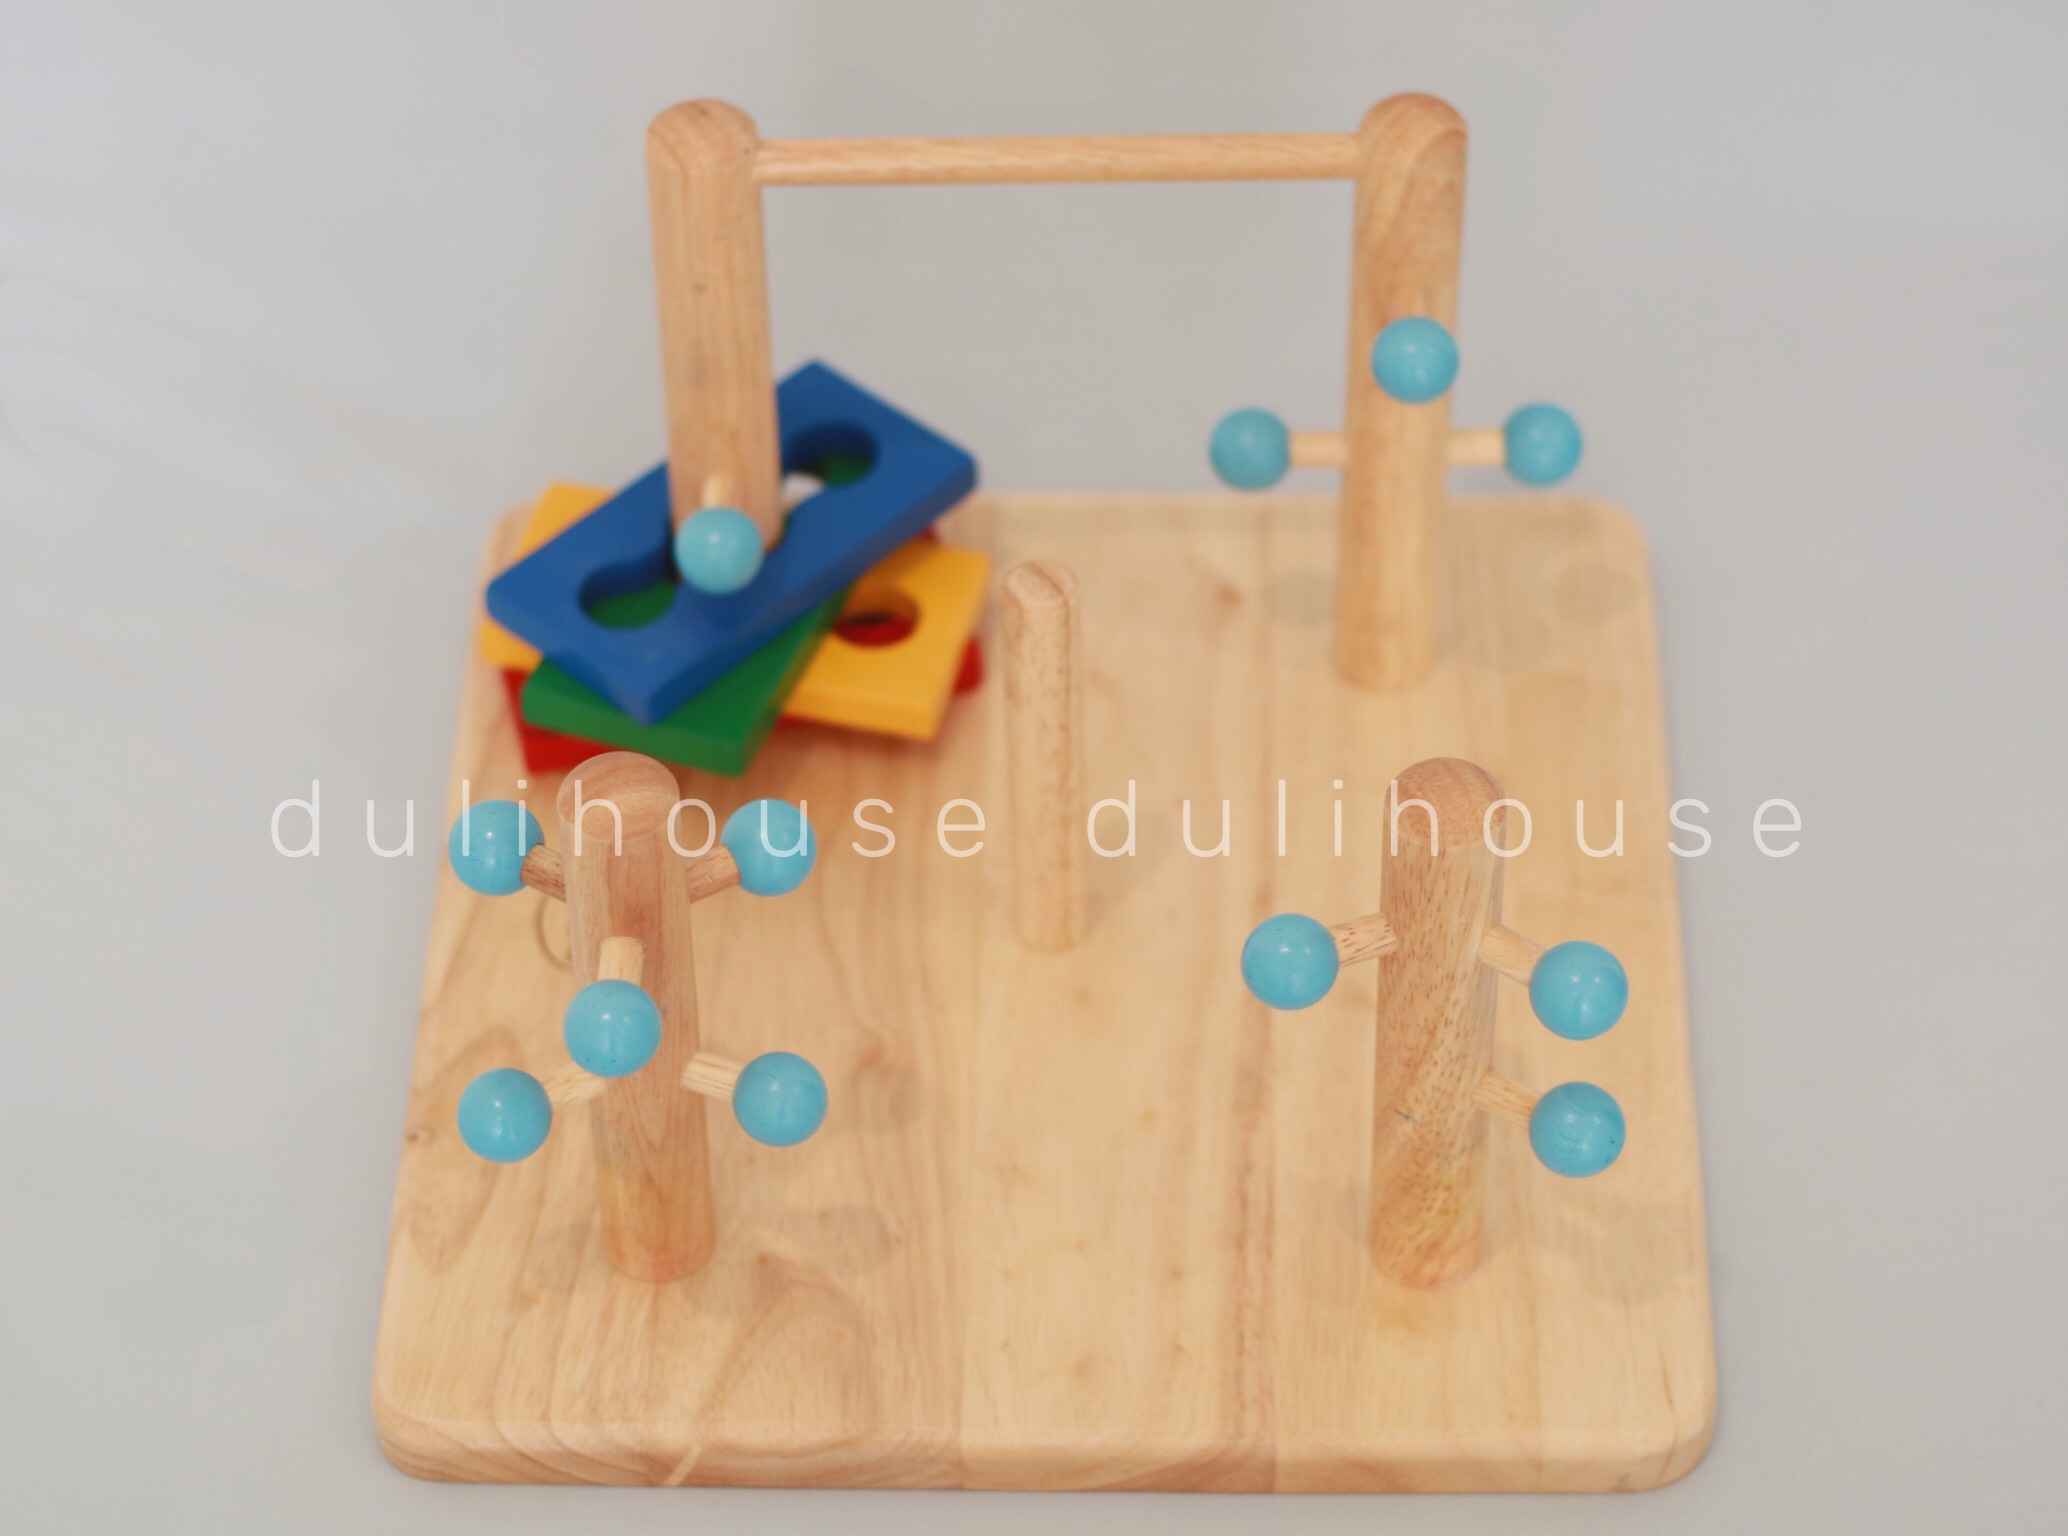 Đồ chơi gỗ phát triển vận động và tư duy - Đường luồn lý thú &amp; Hề tháp đa năng 7 màu cho Bé - Gỗ tự nhiên an toàn